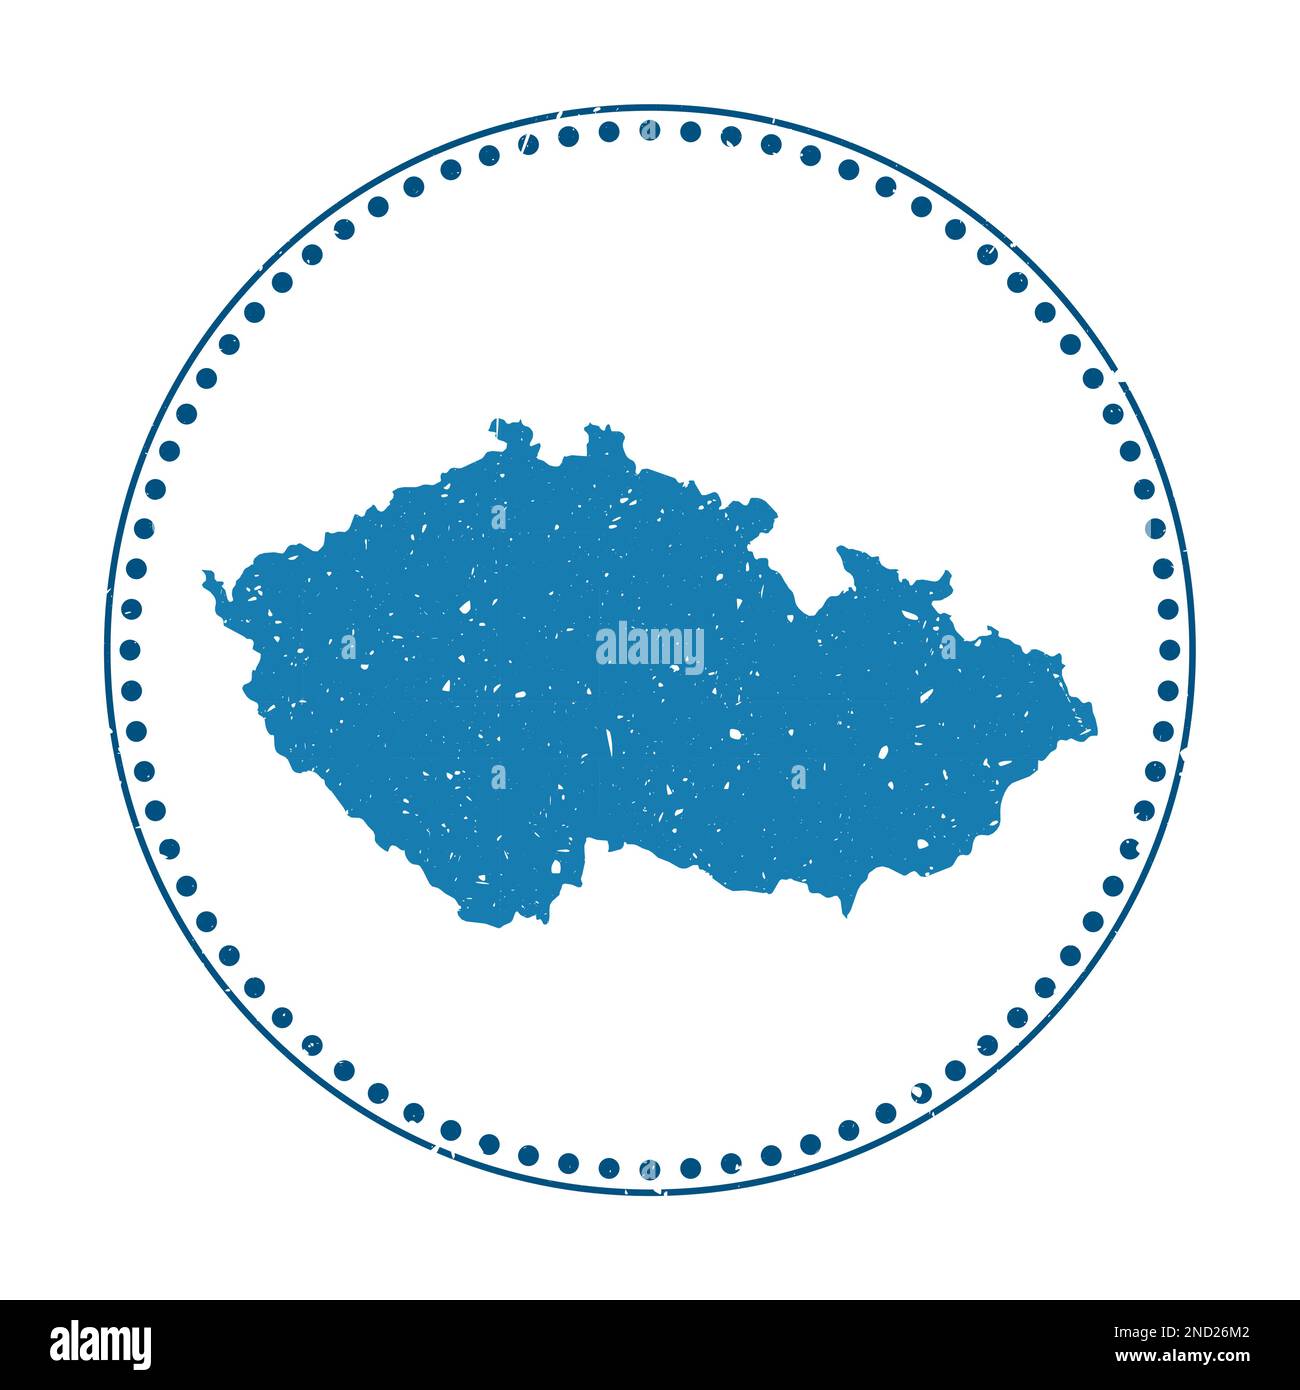 Autocollant République tchèque. Timbre de voyage en caoutchouc avec carte du pays, illustration vectorielle. Peut être utilisé comme insigne, logotype, étiquette, autocollant ou badge de TH Illustration de Vecteur